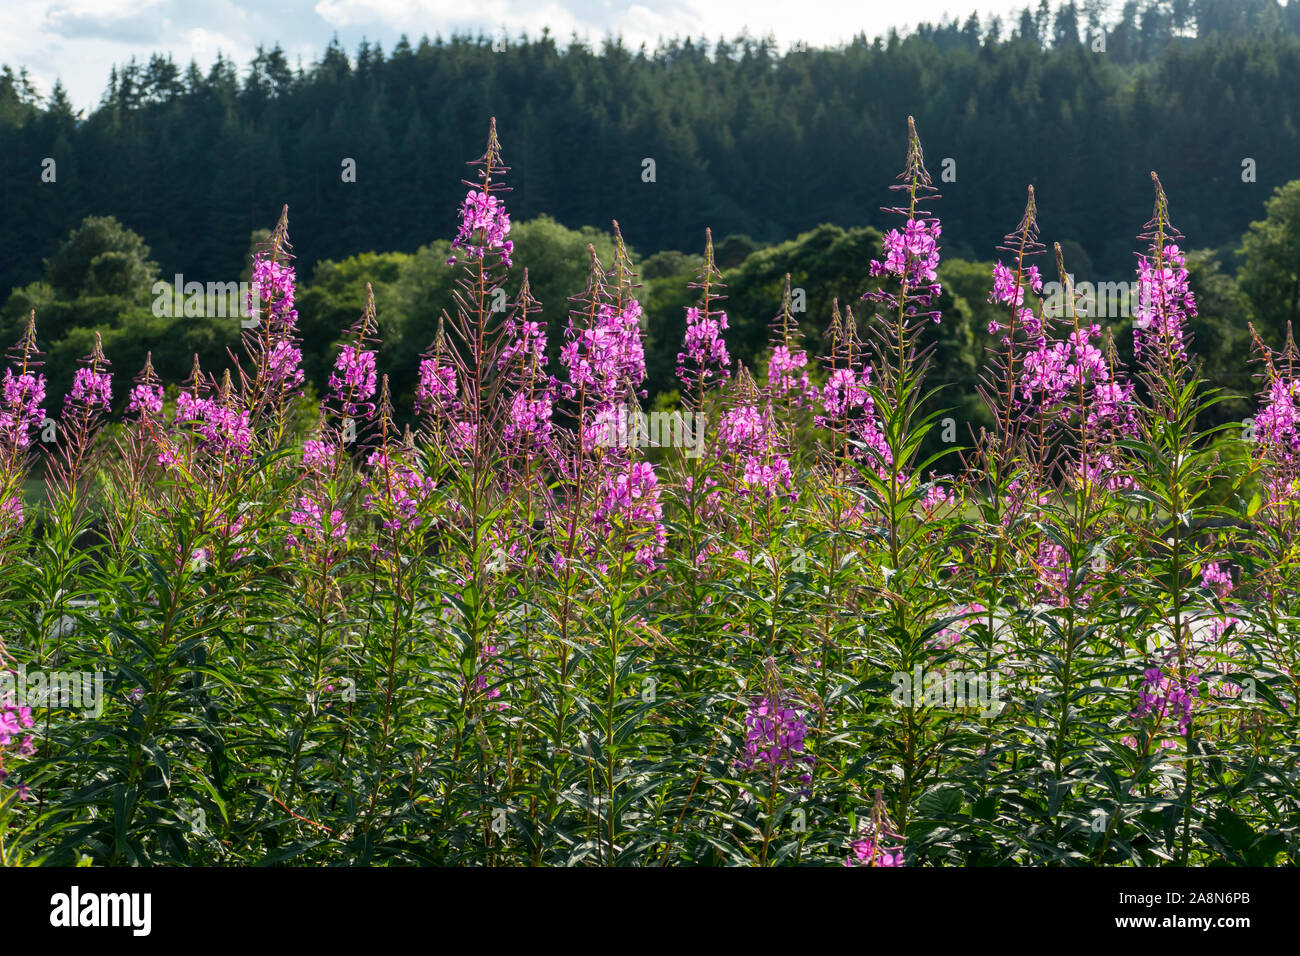 Weidenröschen mit lila pink farbenen Blüten, wachsen am Waldrand Stock  Photo - Alamy